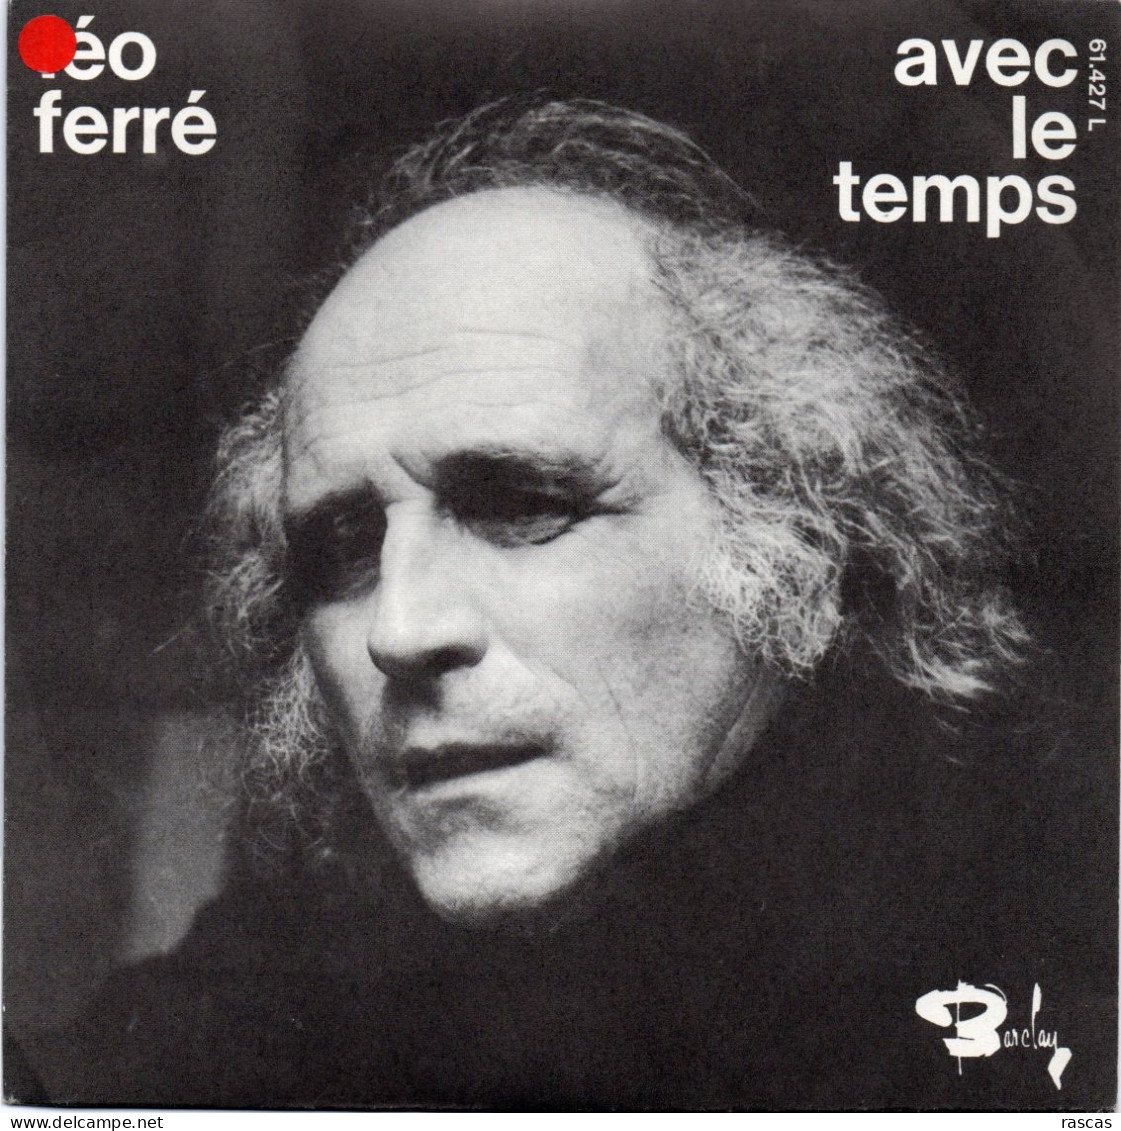 DISQUE VINYL 45 T DU CHANTEUR FRANCAIS LEO FERRE - AVEC LE TEMPS - Autres - Musique Française